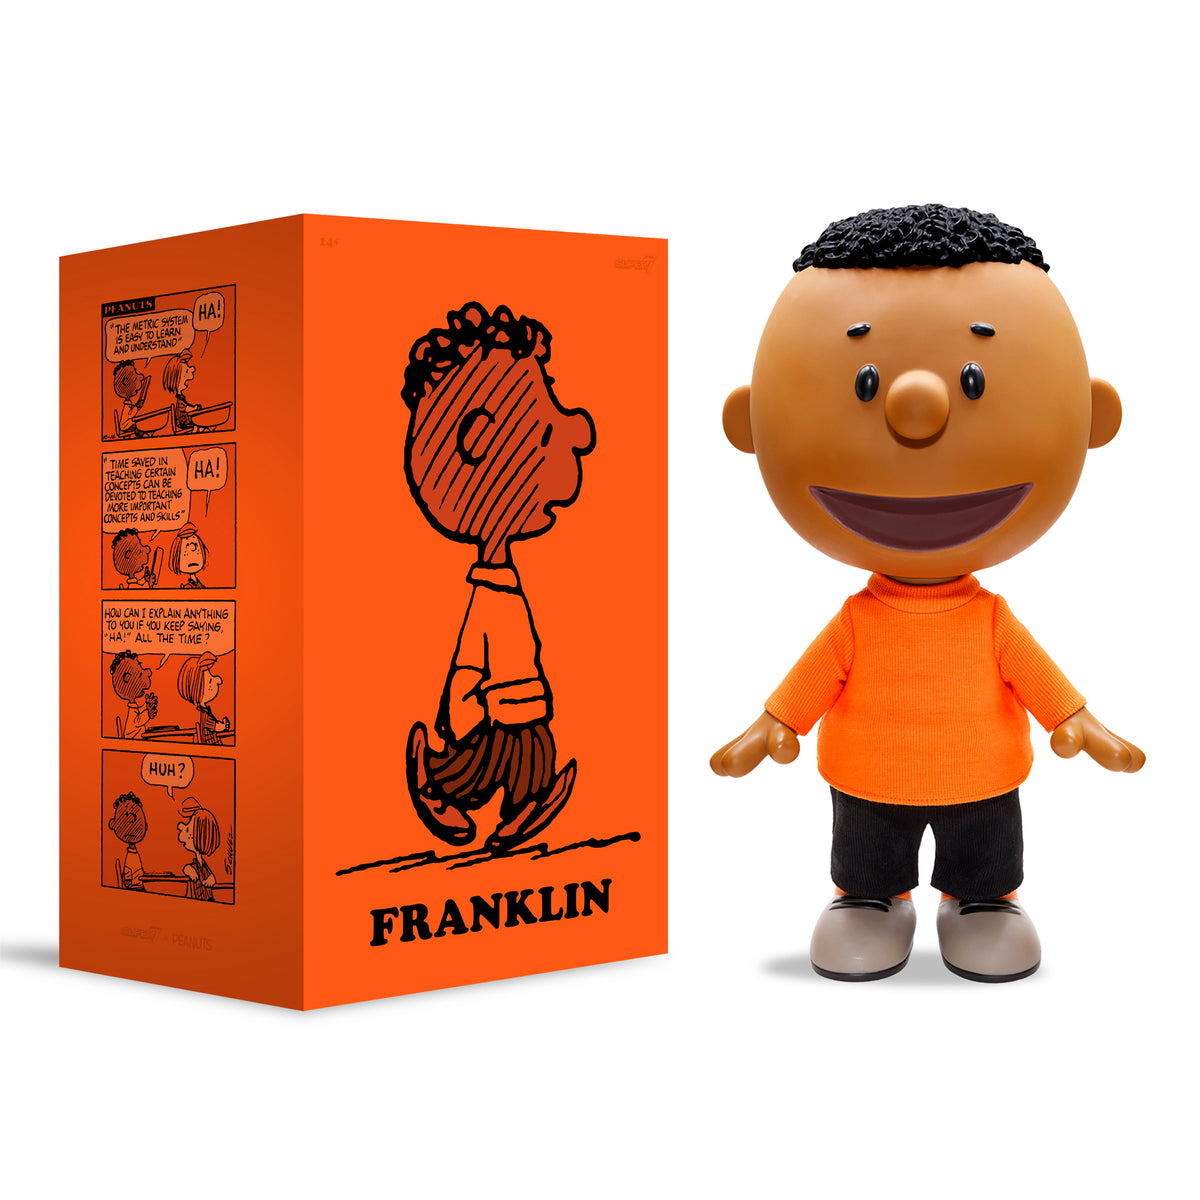 FRANKLIN Peanuts Big Vinyl from Super7